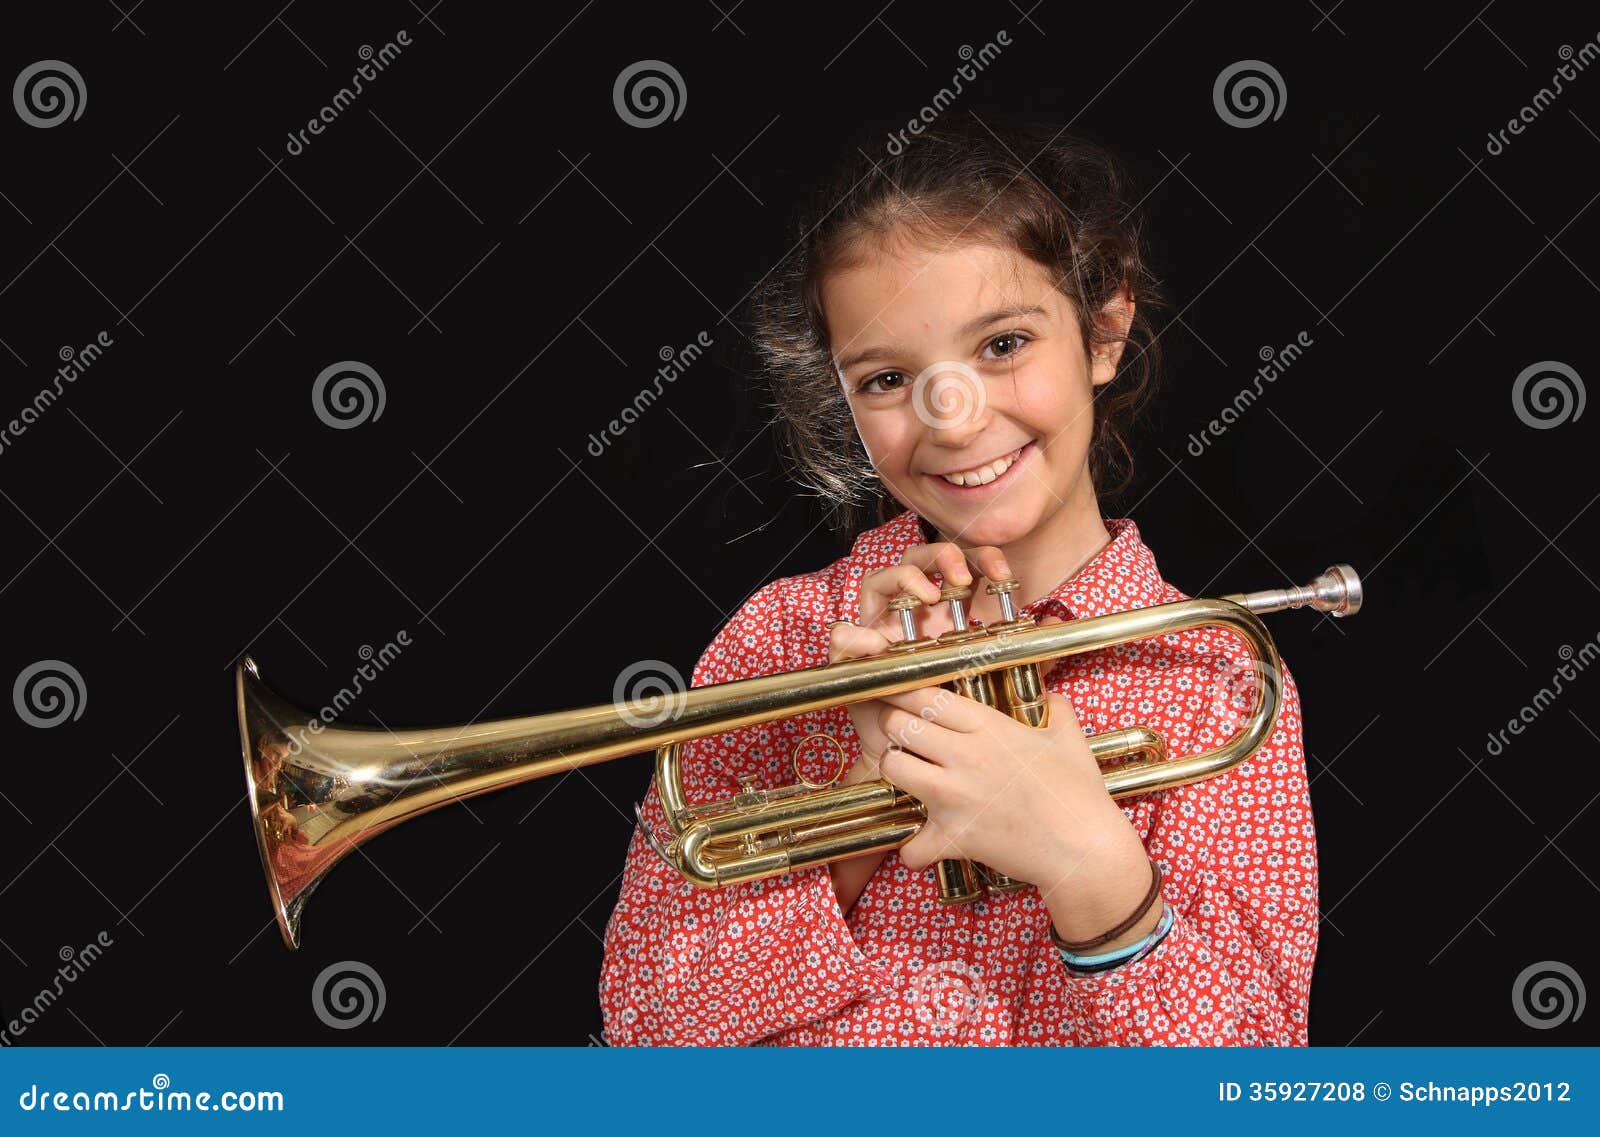 La Fille Joue De La Guitare Et Le Garçon Joue De La Trompette